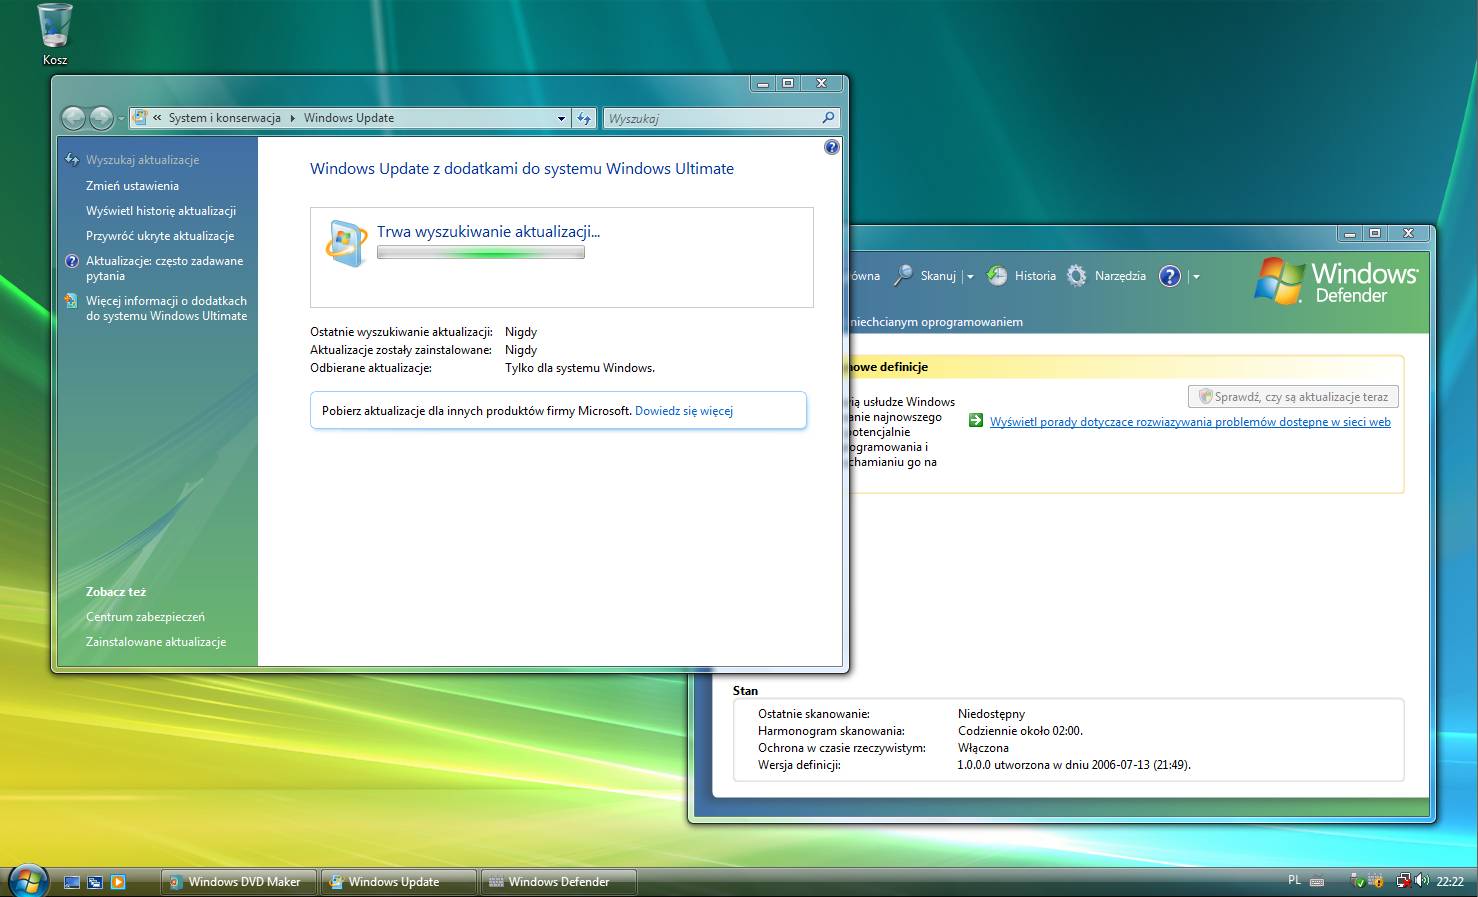 Wbudowany klient aktualizacji oraz skaner antyszpiegowski- Windows Defender. Na zdjęciu widoczne także przeprojektowany Panel Sterowania.